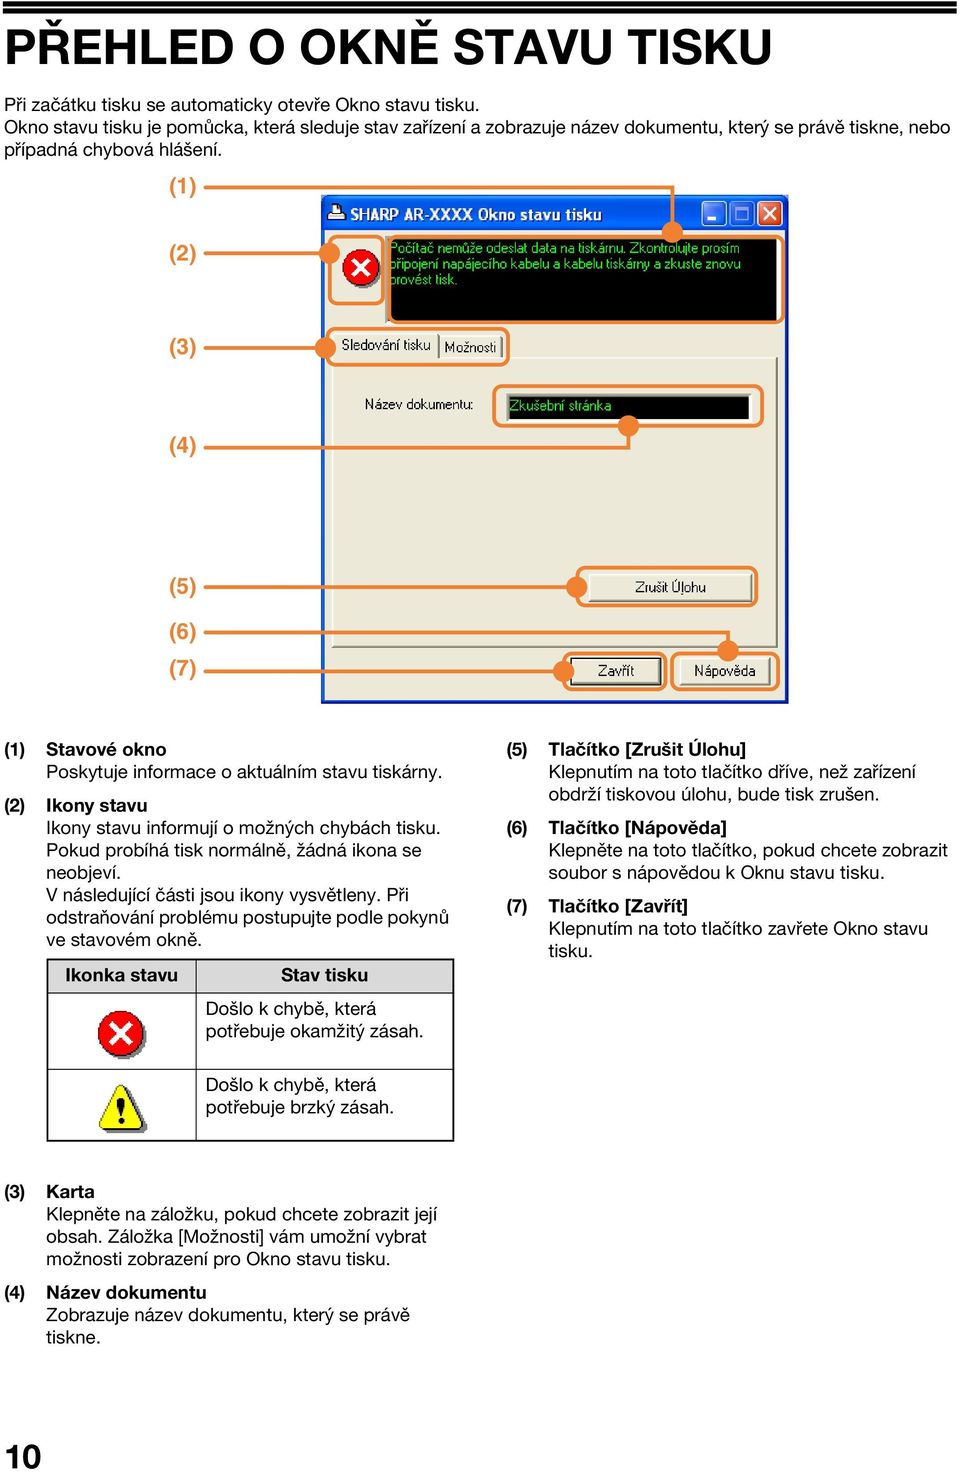 (1) (2) () (4) (5) (6) (7) (1) Stavové okno Poskytuje informace o aktuálním stavu tiskárny. (2) Ikony stavu Ikony stavu informují o možných chybách tisku.